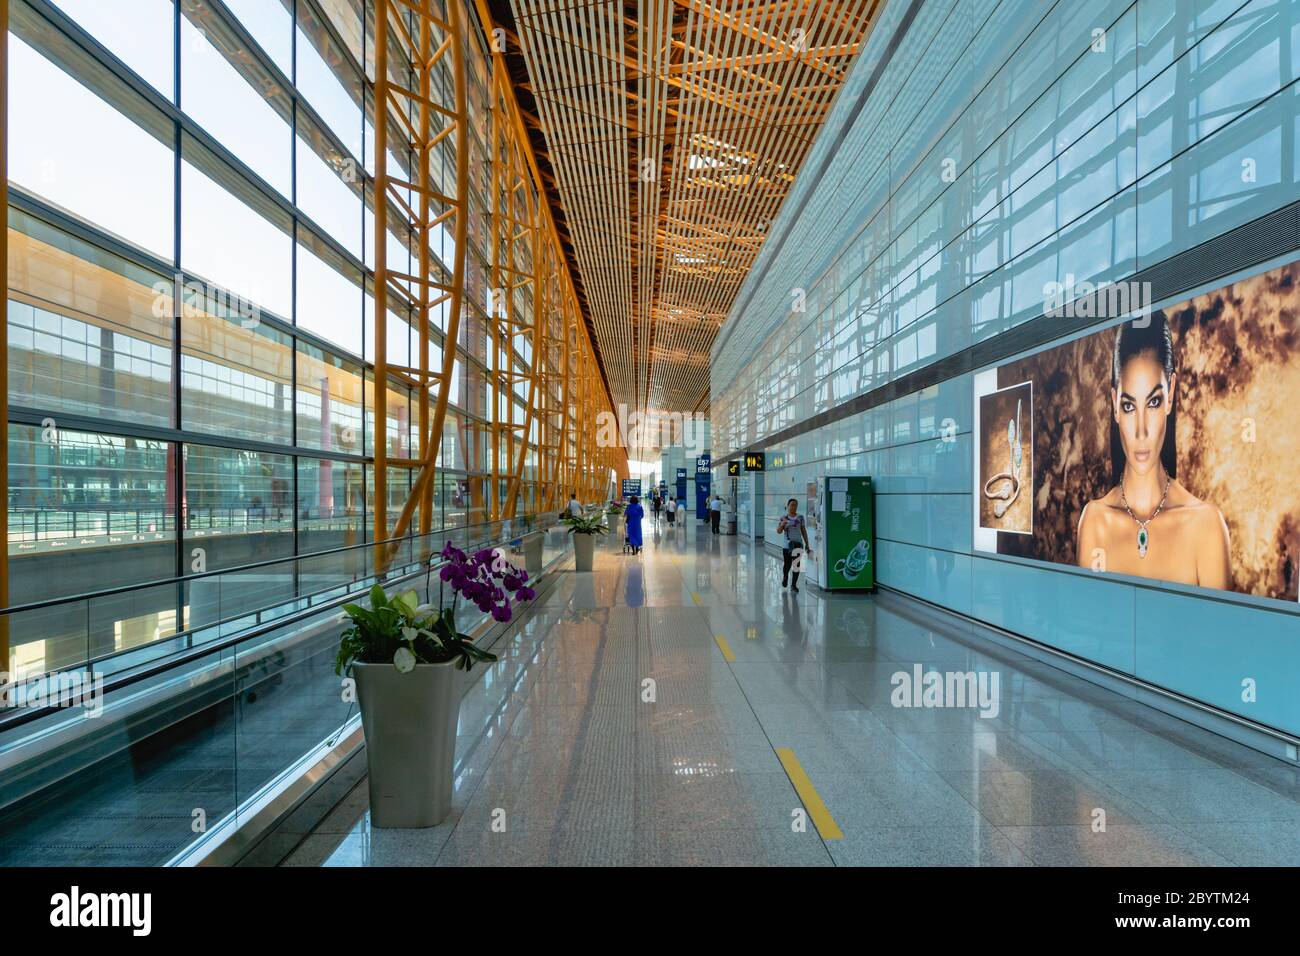 Beijng, Chine - juillet 2019 : architecture et intérieurs de l'aéroport international de Beijing. Aéroport international de Beijing Capital Banque D'Images